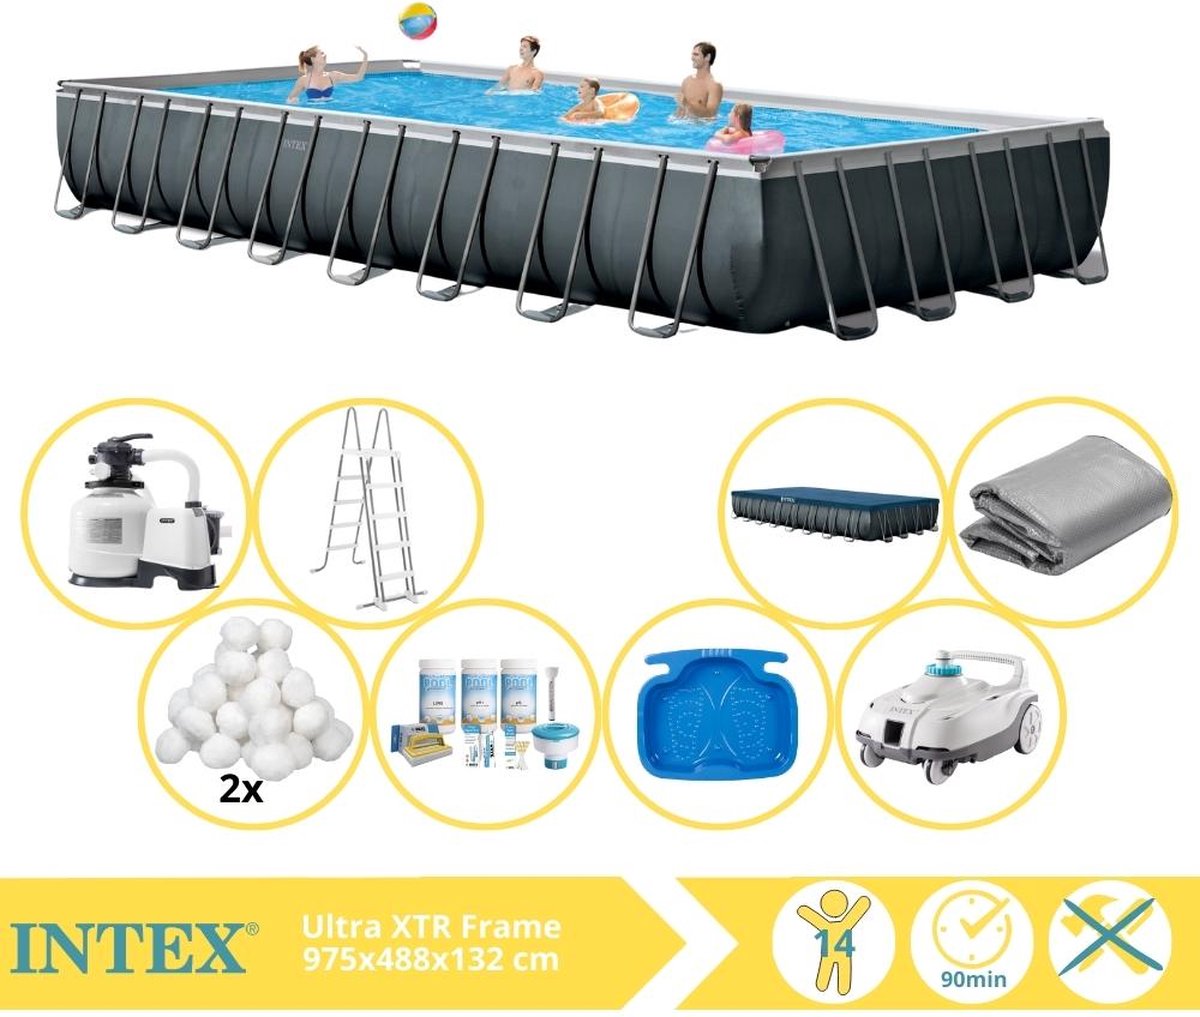 Intex Ultra XTR Frame Zwembad - Opzetzwembad - 975x488x132 cm - Inclusief Onderhoudspakket, Filterbollen, Luxe Zwembad Stofzuiger en Voetenbad